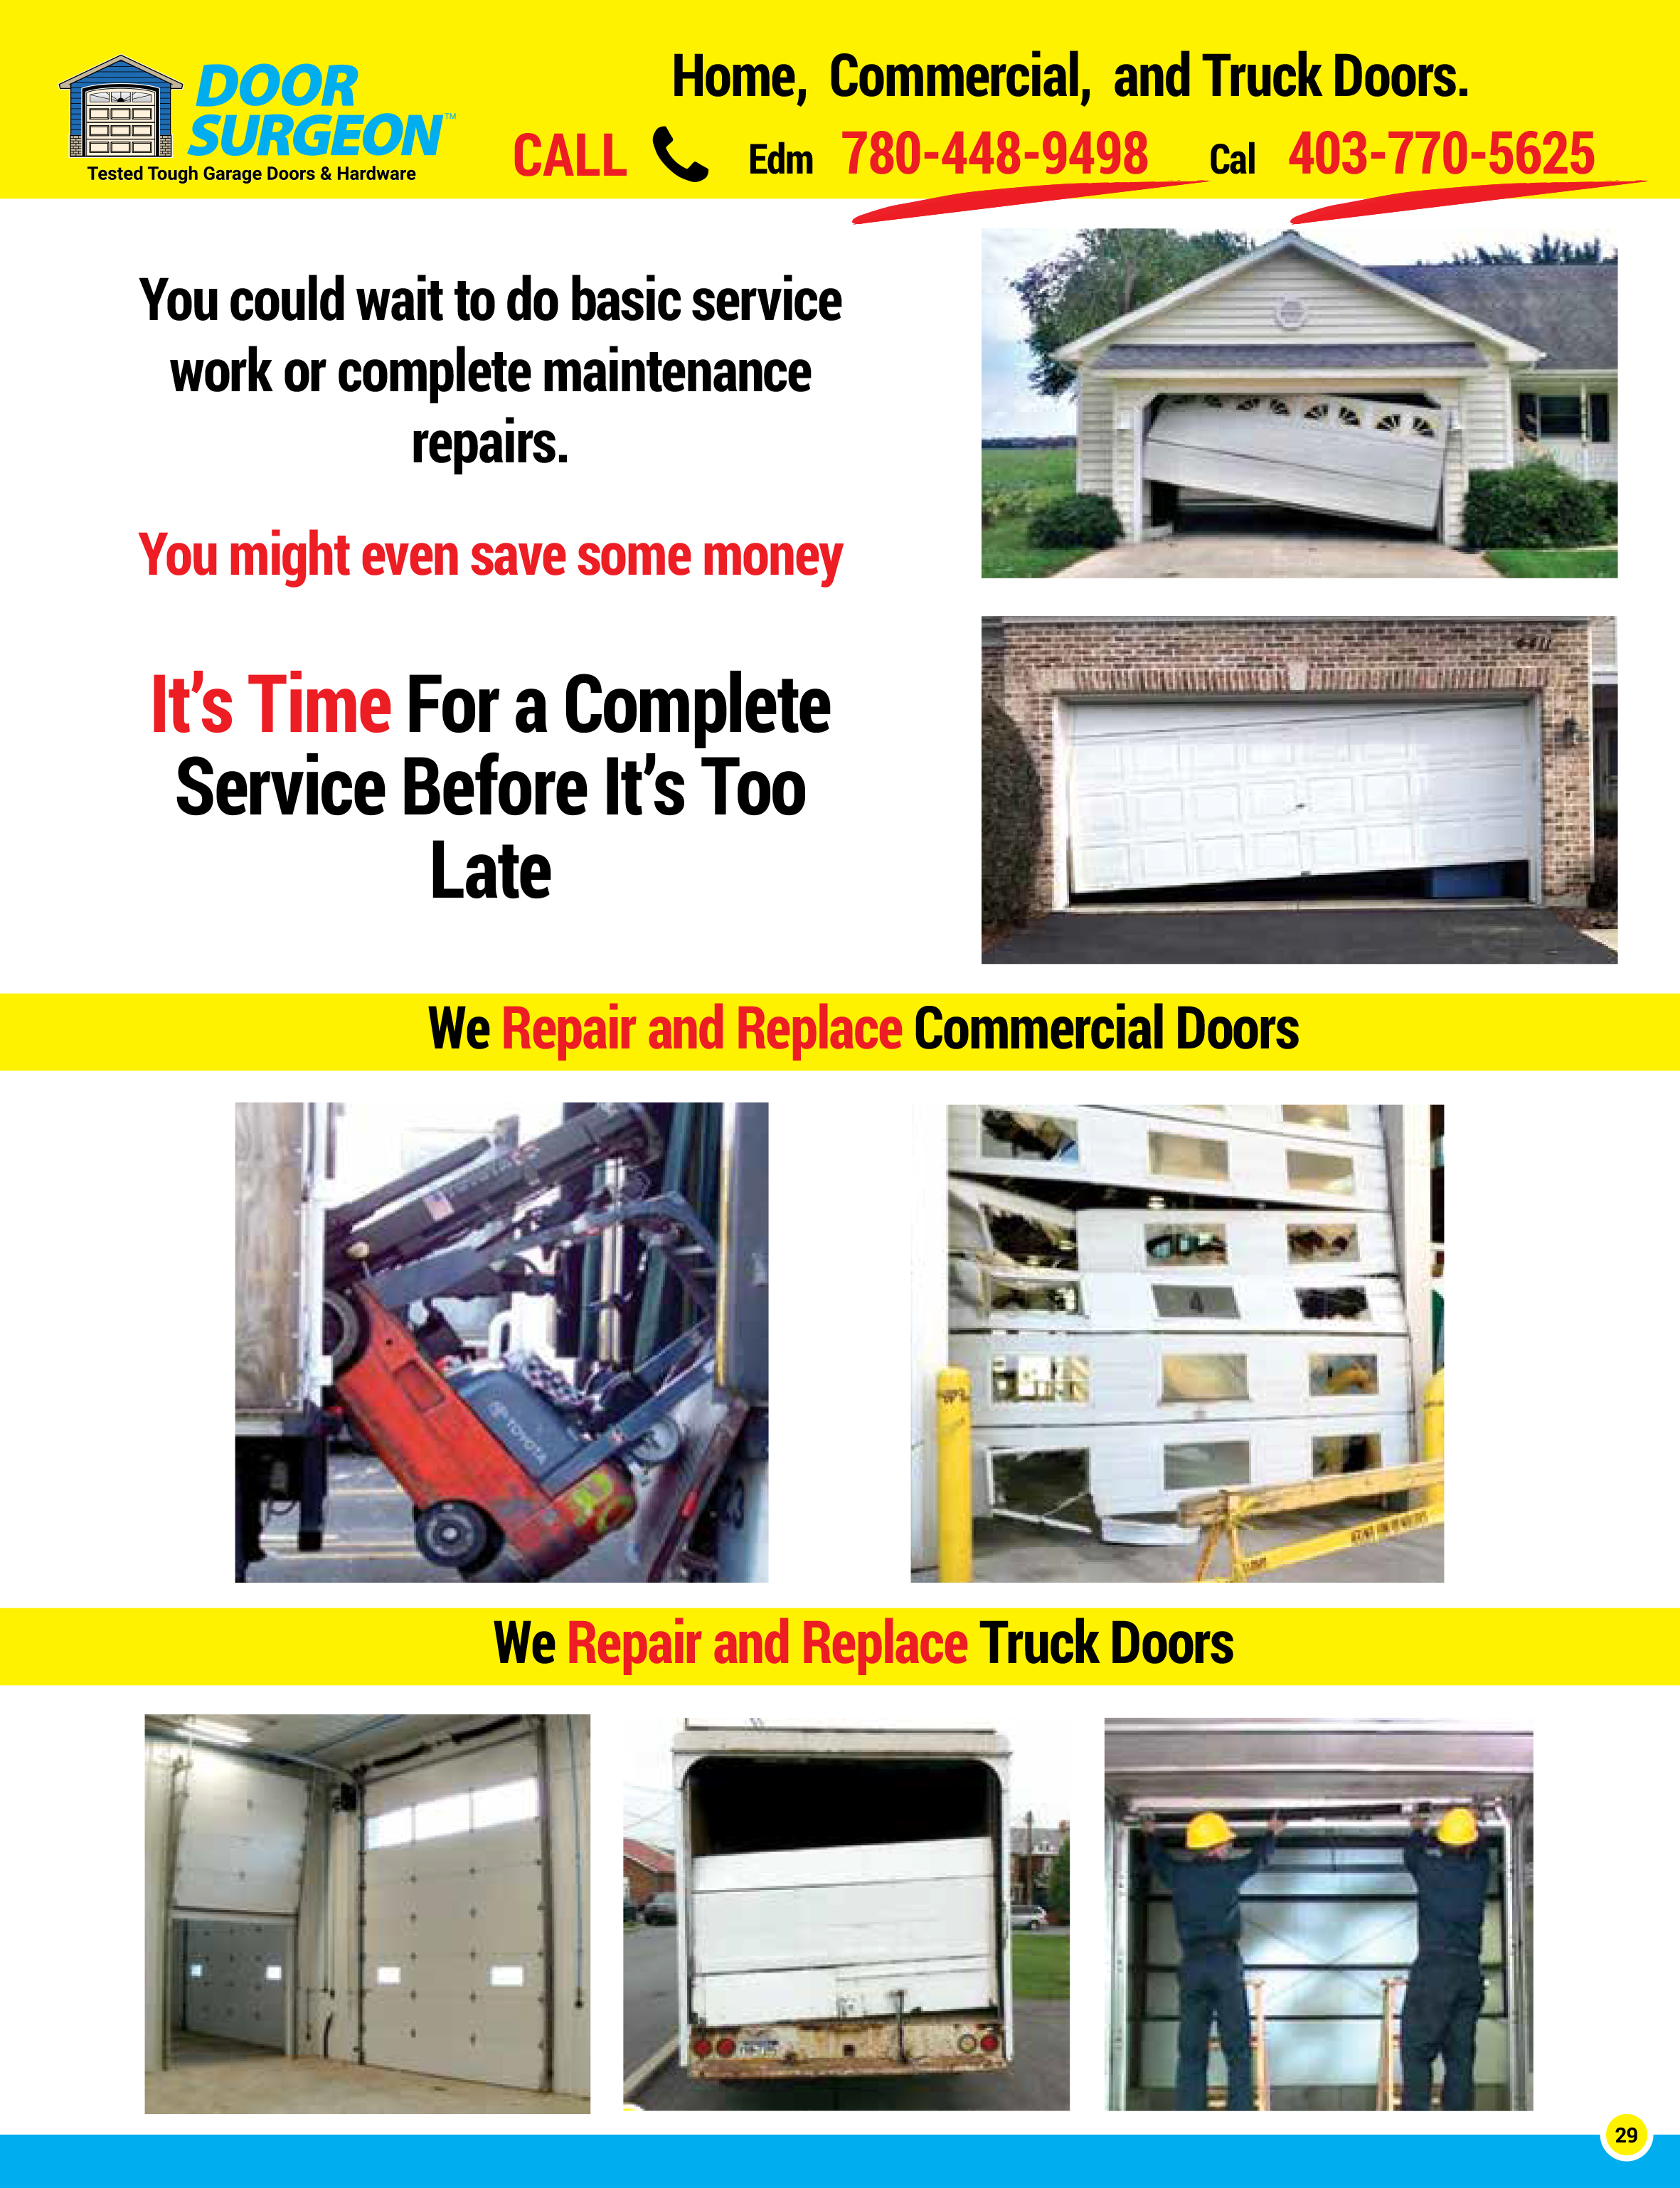 Garage door solutions for home commercial & truck rolling door repair & replacement parts & service.